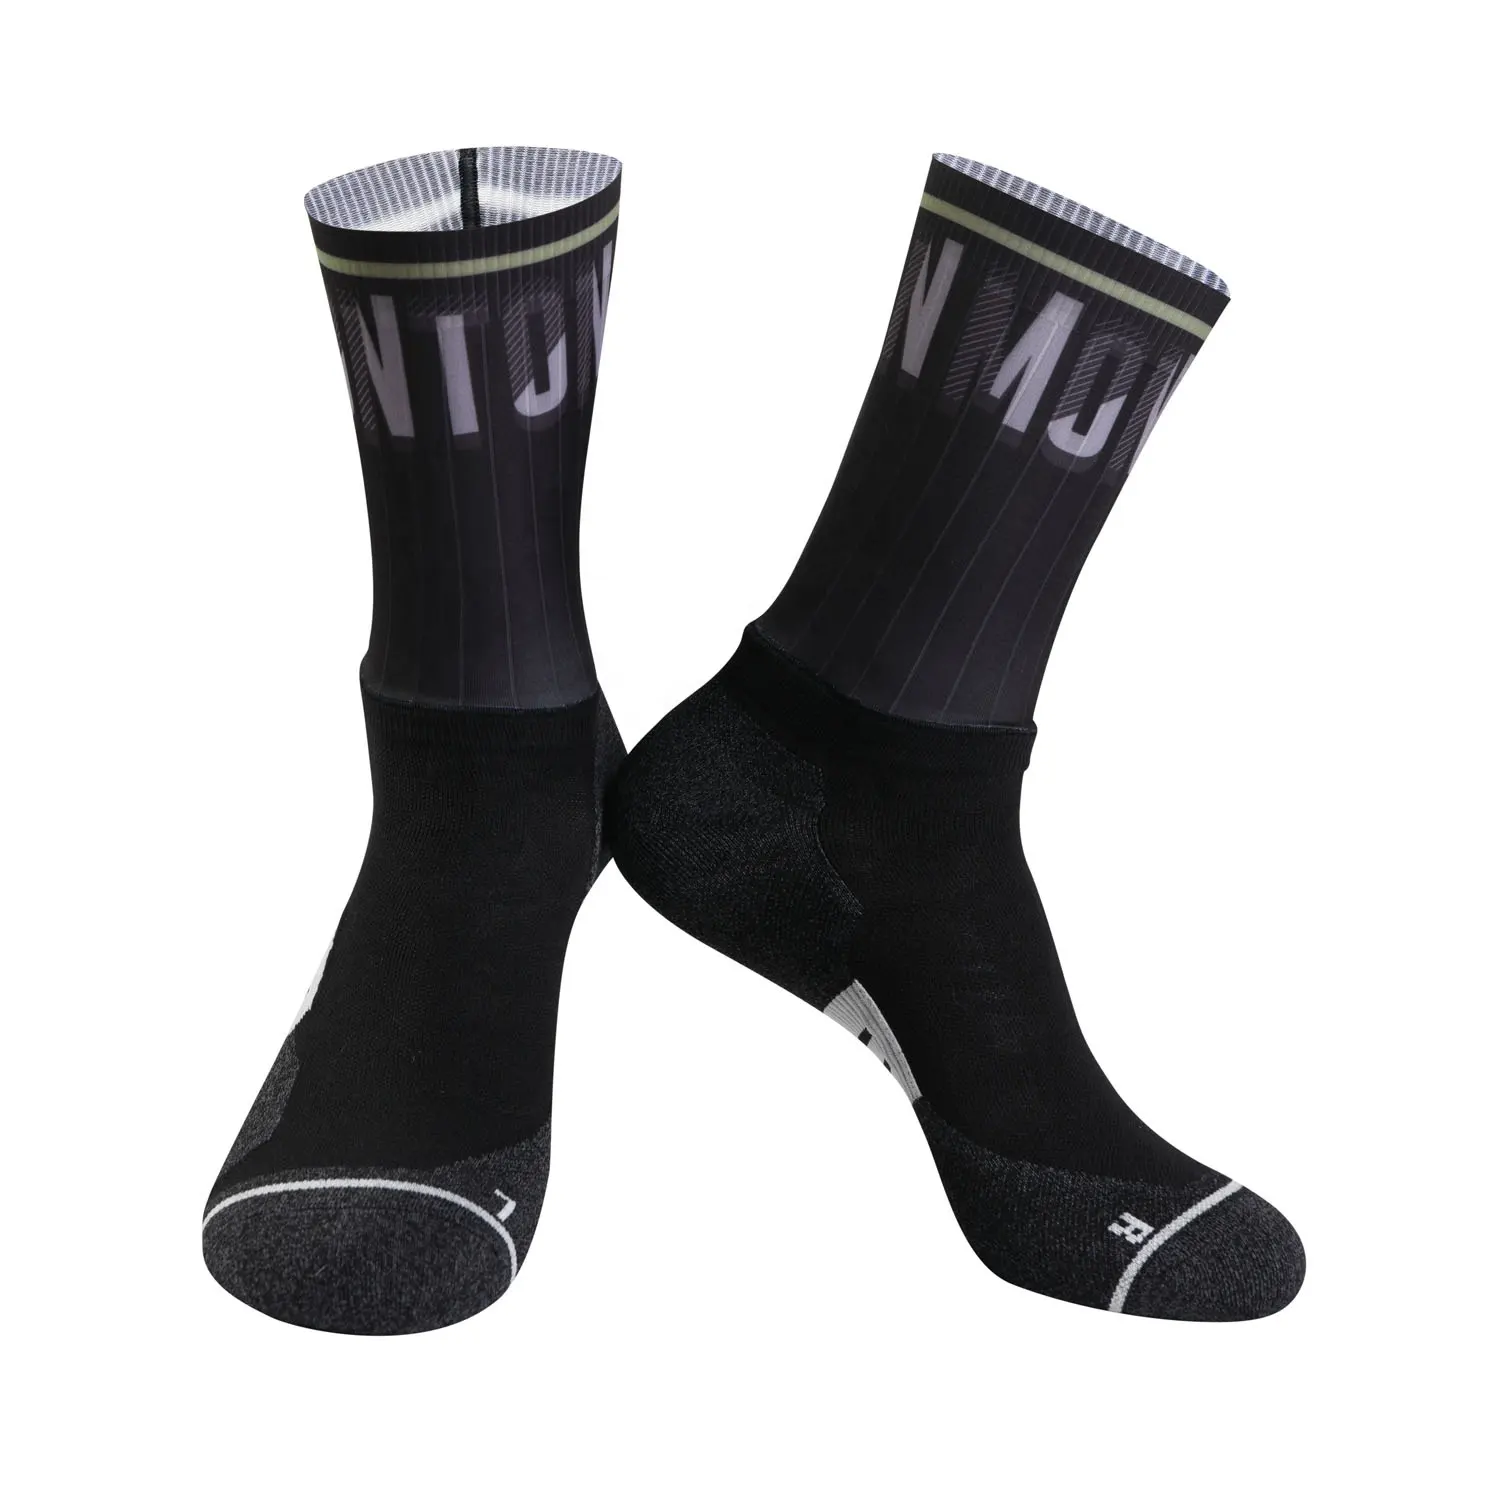 Dh — chaussettes aérobique unisexe tendance, chaussons de course, de cyclisme, d'athlétisme, avec semelle Coolmax